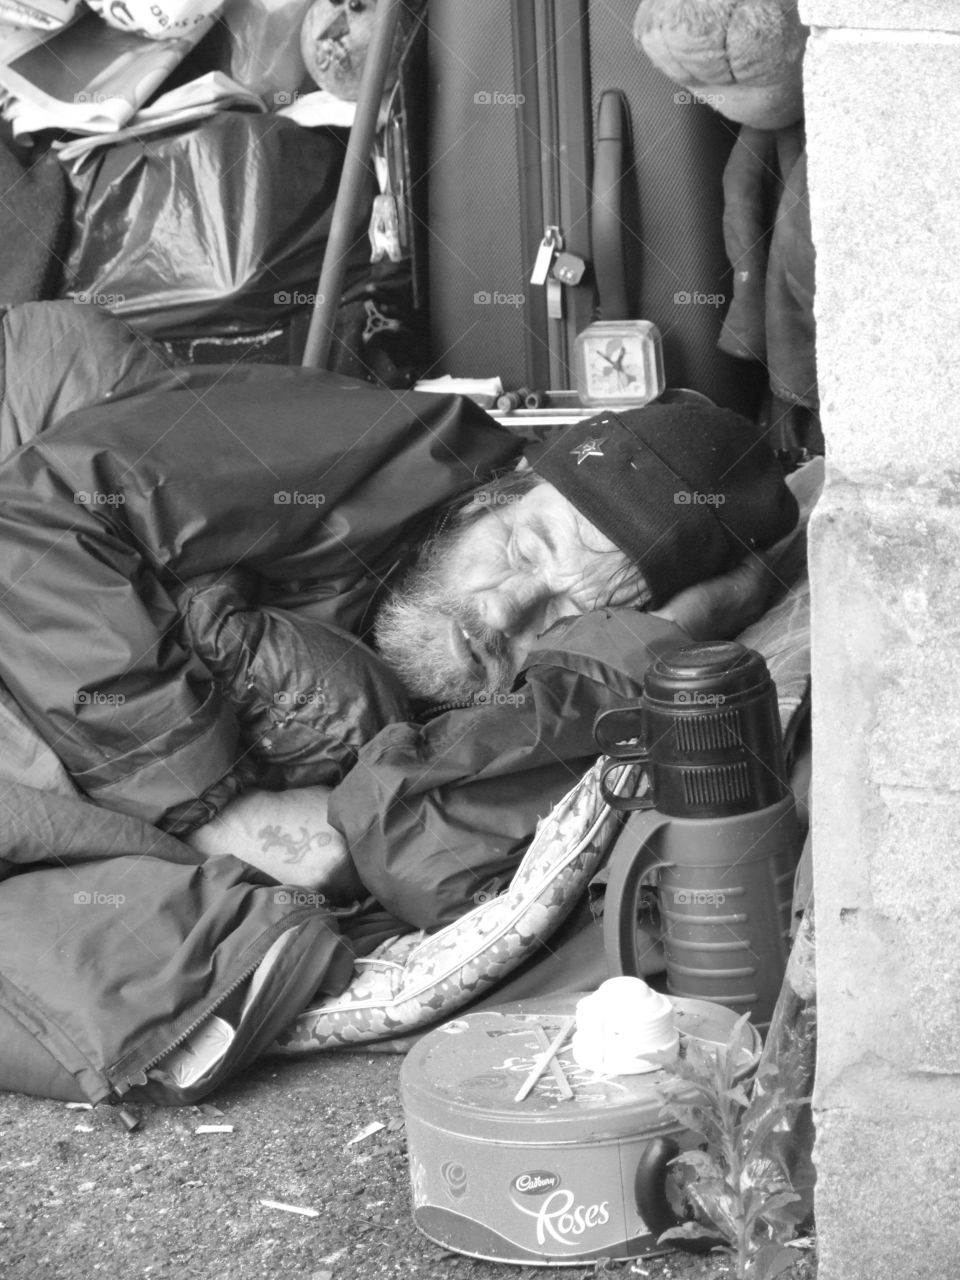 street close up homeless beggar by james.c.parker.33